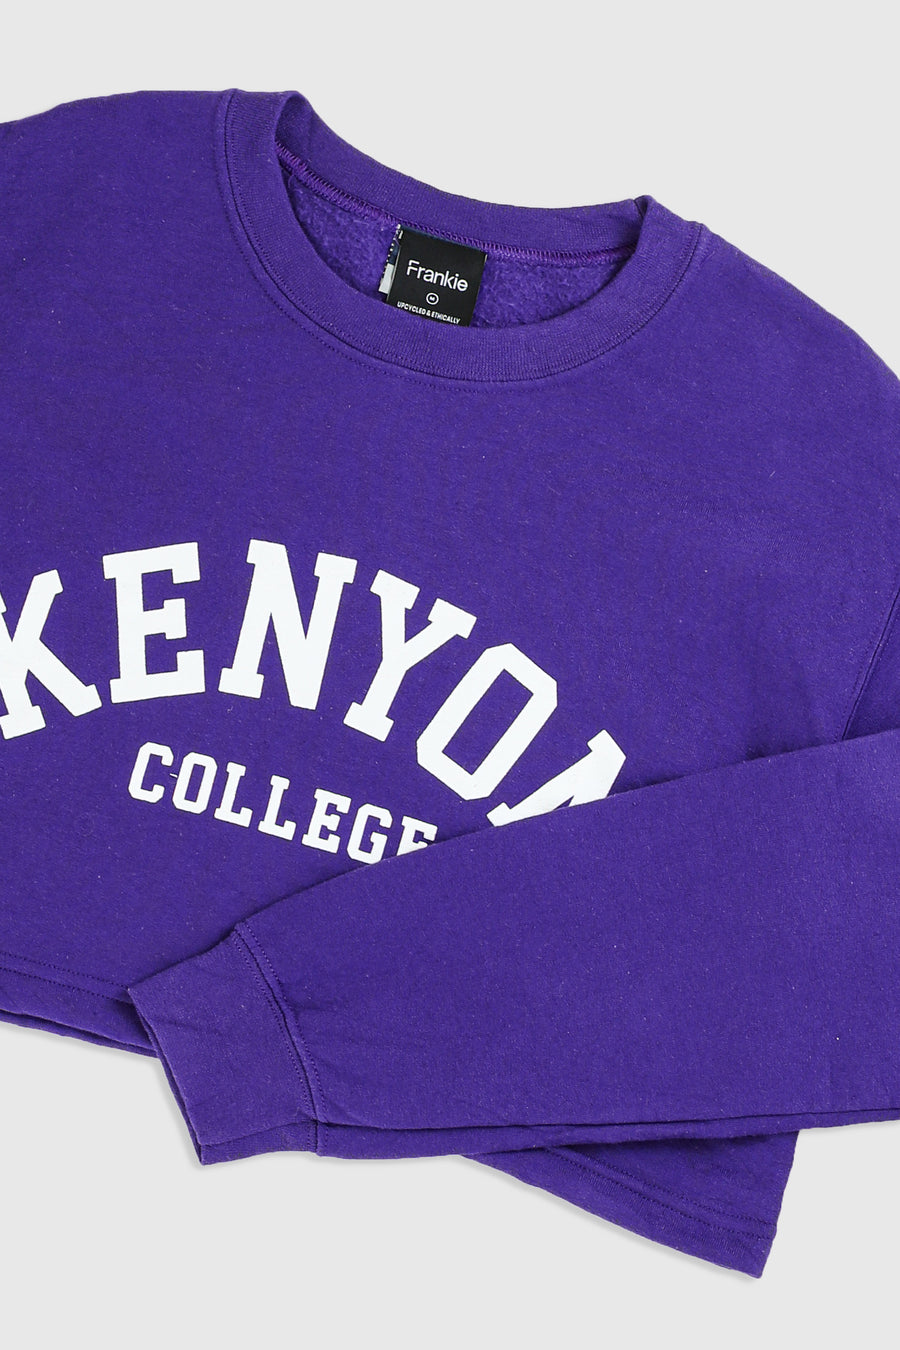 Rework Kenyon College Crop Sweatshirt - M